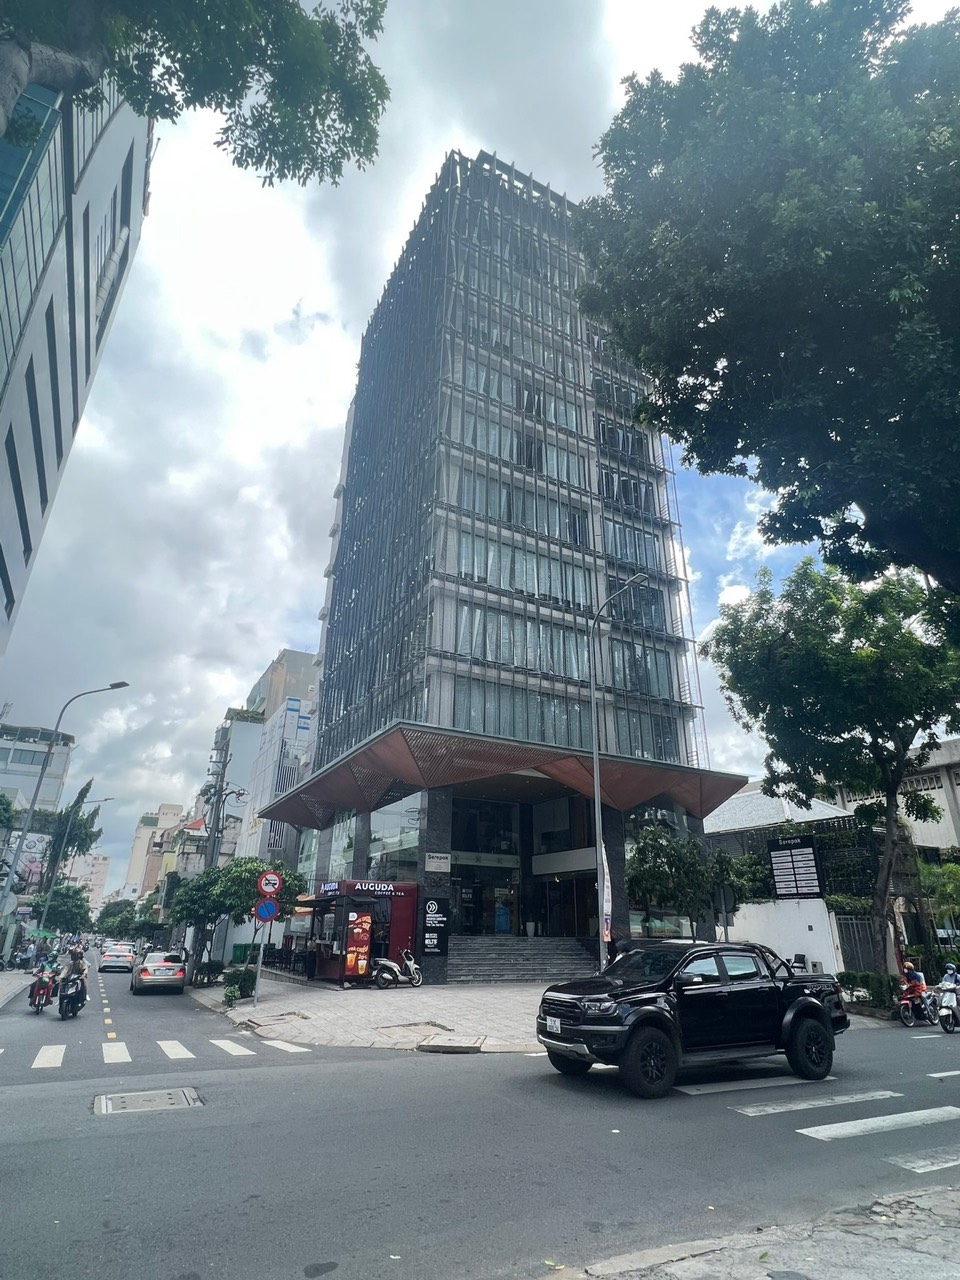 Chính chủ bán tòa nhà Hạng A 2 MT Nguyễn Đình Chiểu - Phan Kế Bính, 2 hầm 15 tầng, giá 1000 tỷ TL